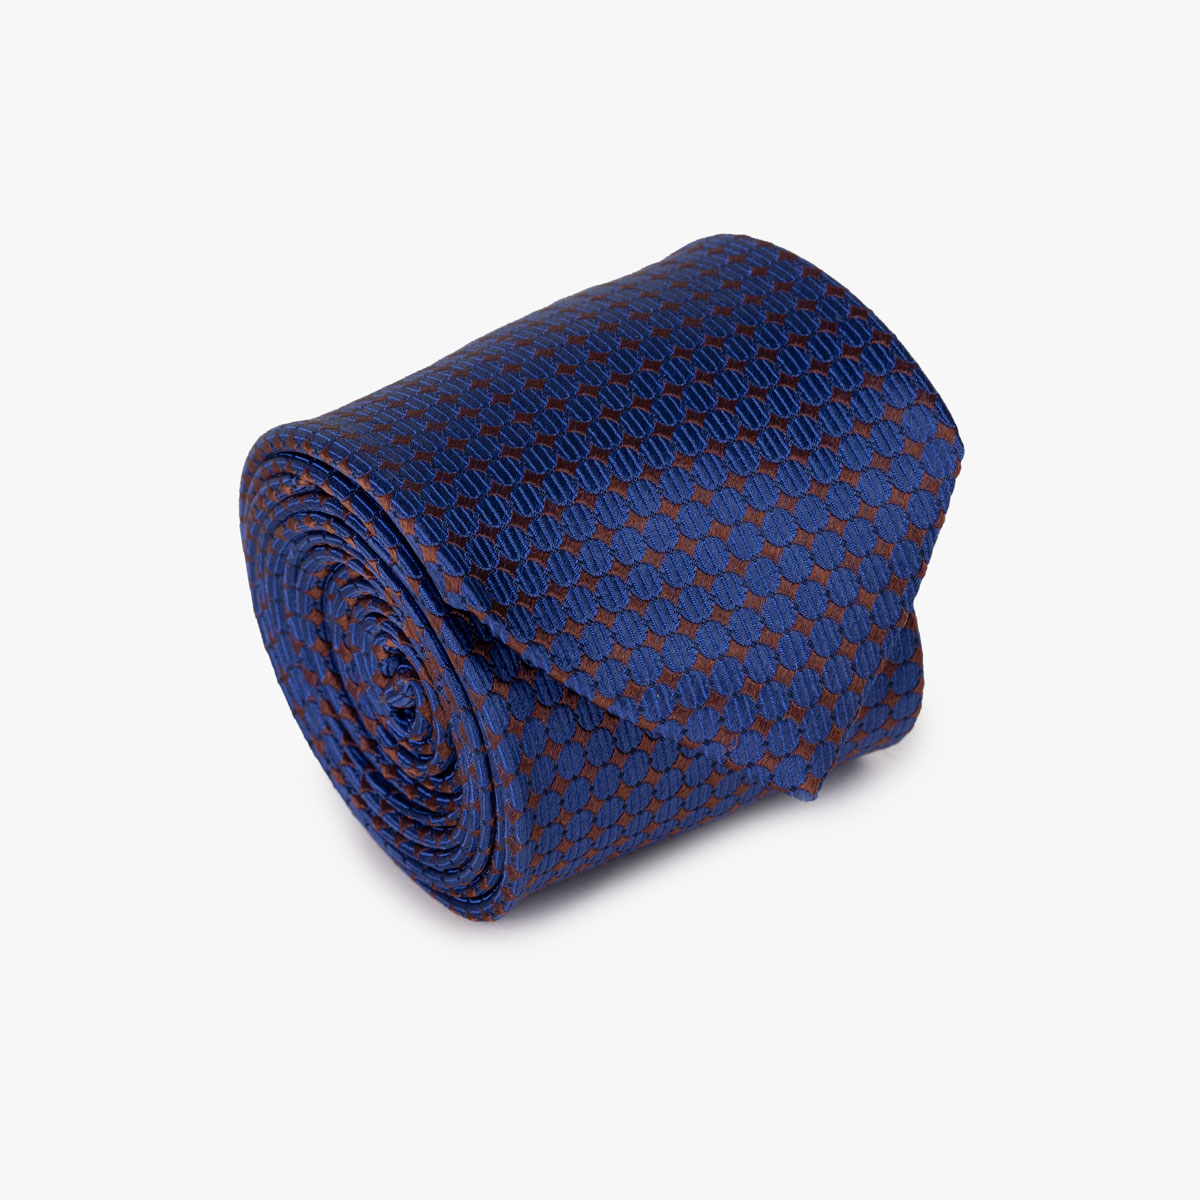 Krawatte mit geometrischem Muster in Blau und Weinrot